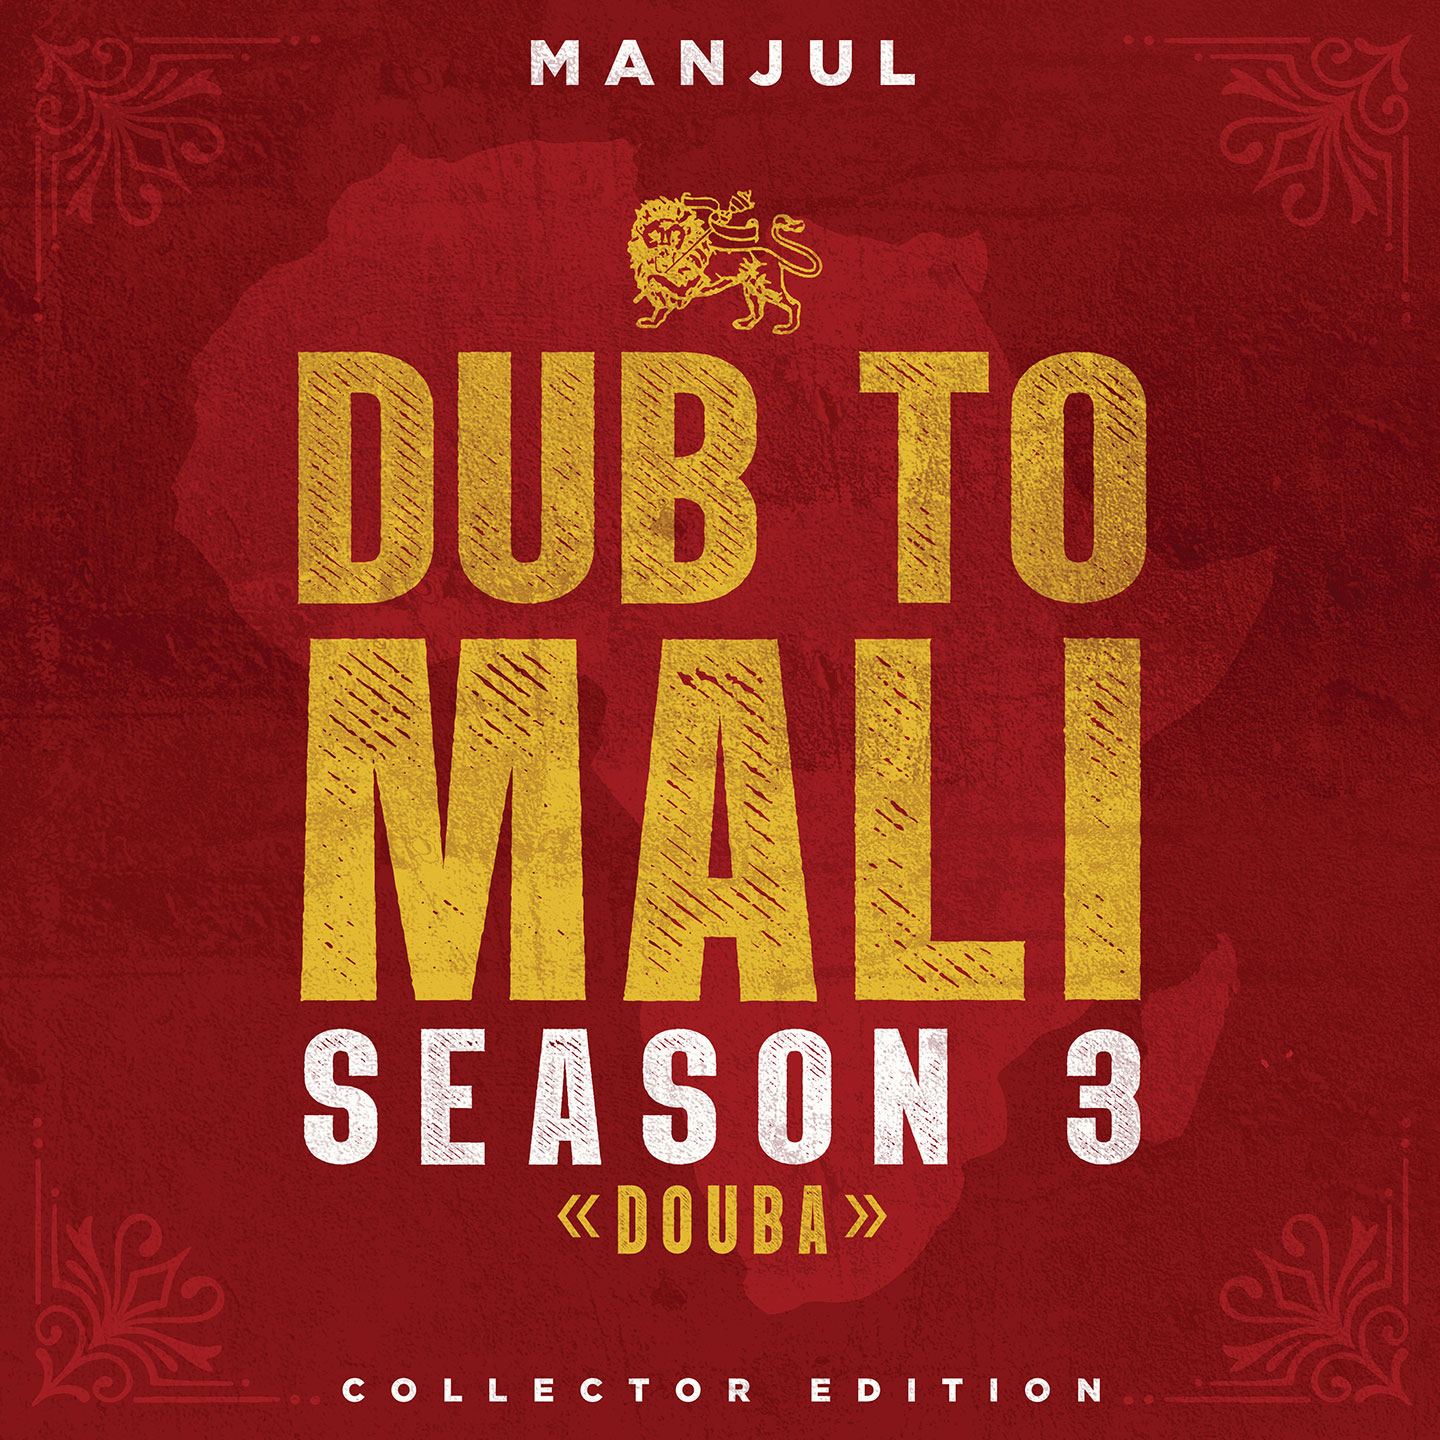 Cover de l'album de Manjul - Dub to Mali - Season 3. Réalisé par Loseou